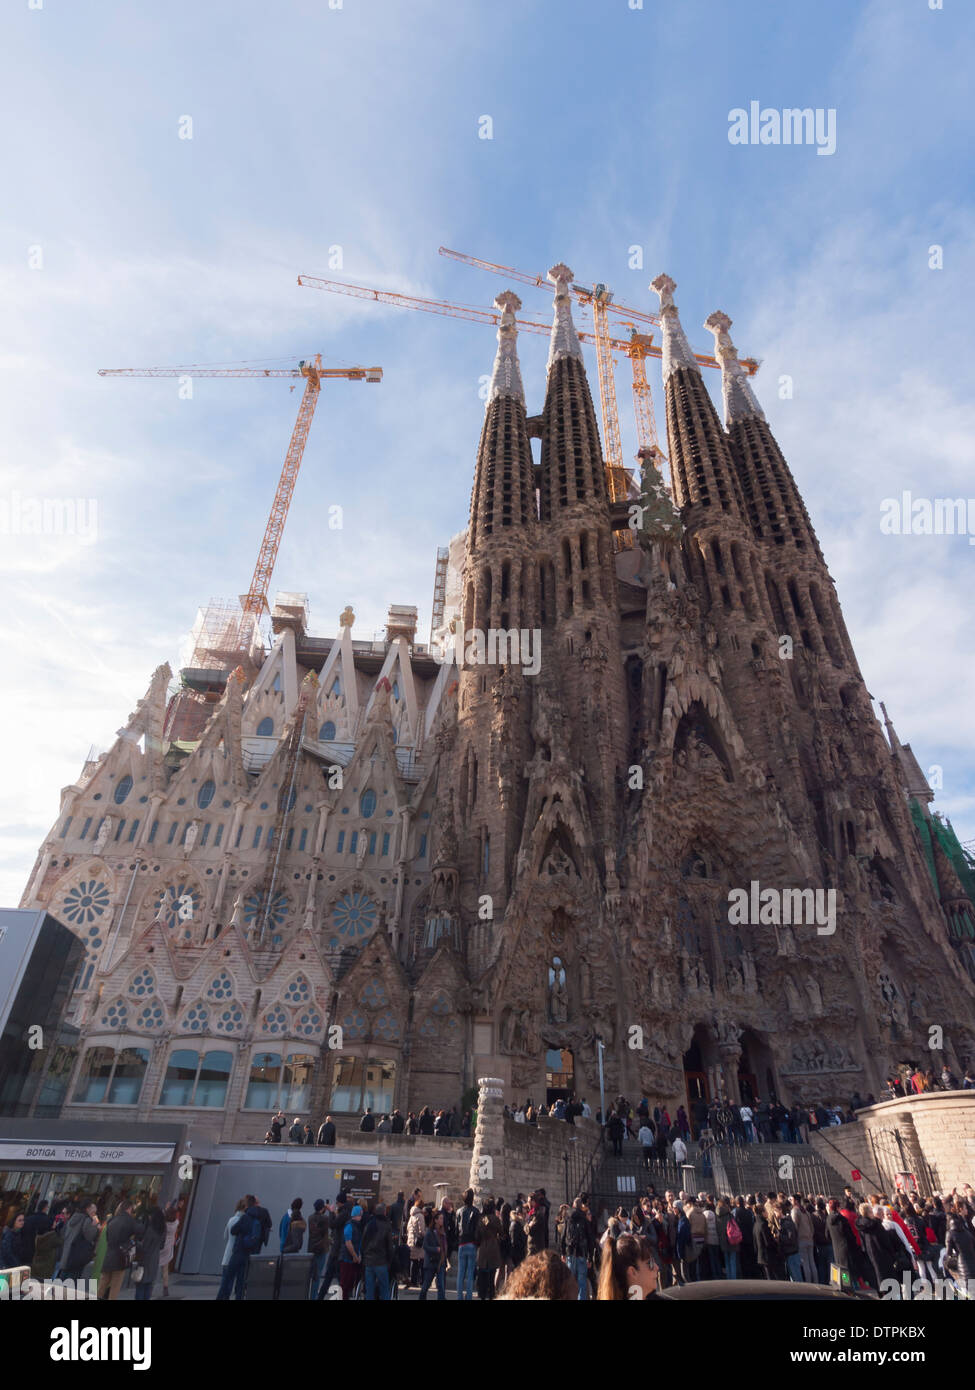 Grues de construction à Antonio Gaudi's cathédrale "Sagrada Familia" à Barcelone, Espagne. Banque D'Images